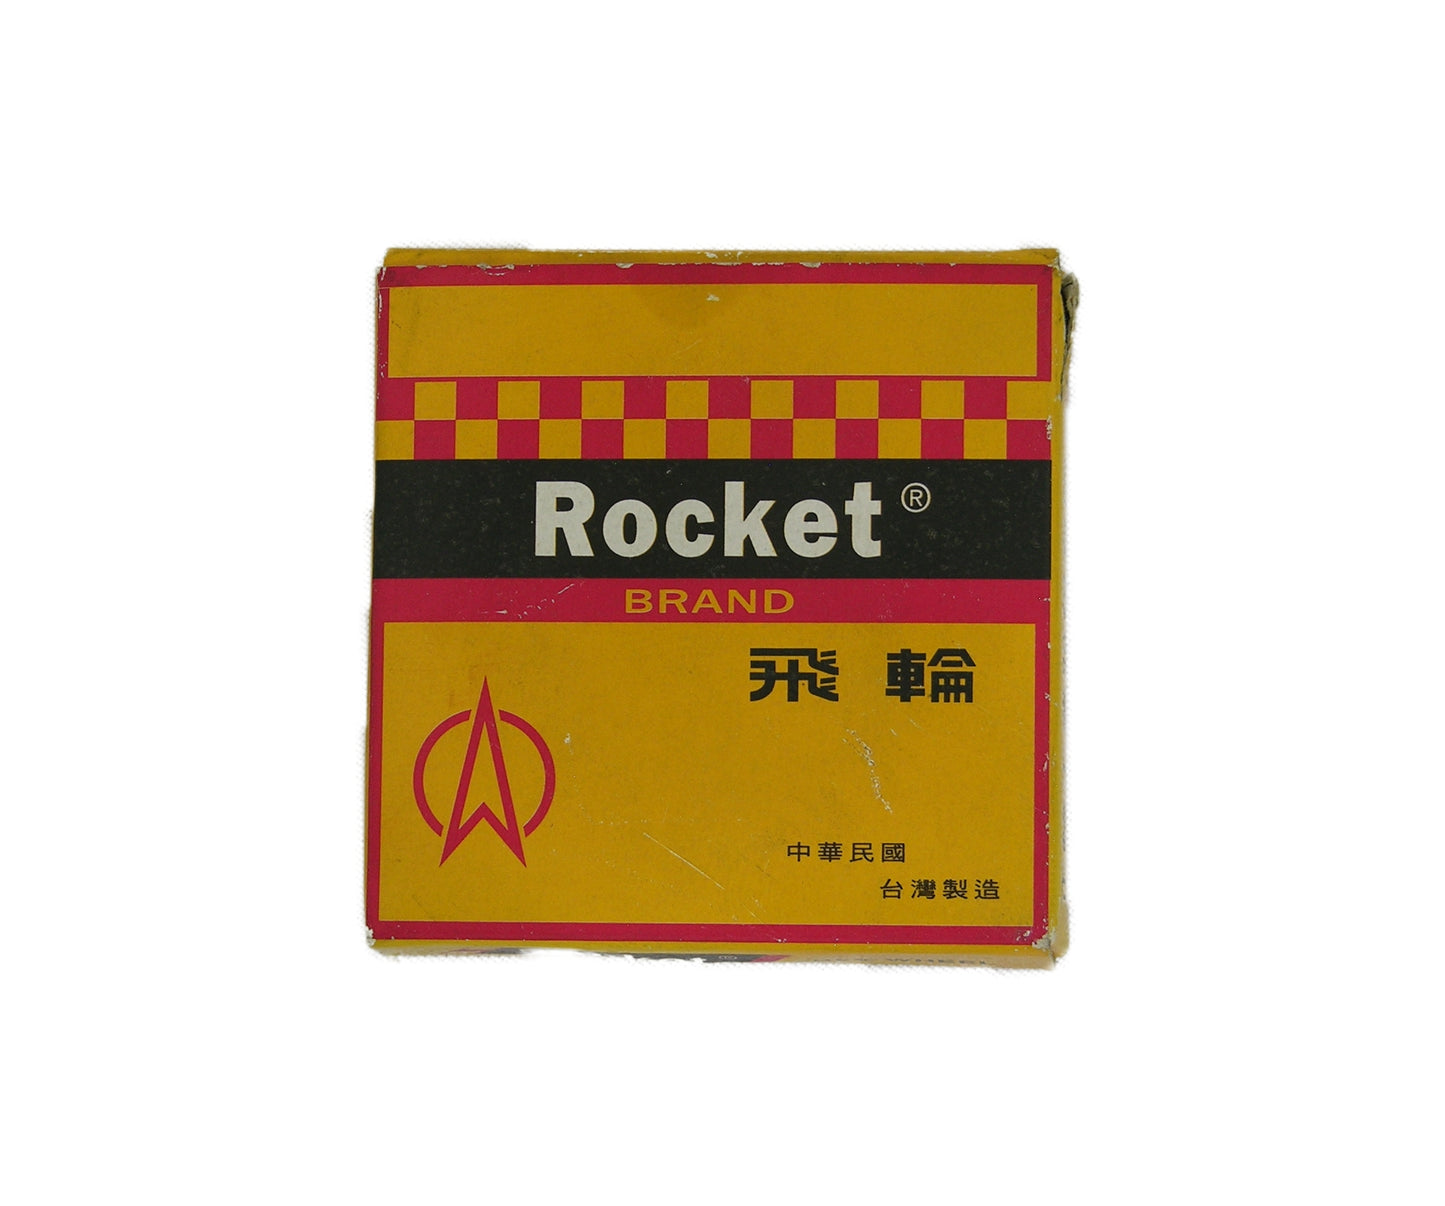 Piñon libre Rocket 18T 1/2x3/32 Taiwan